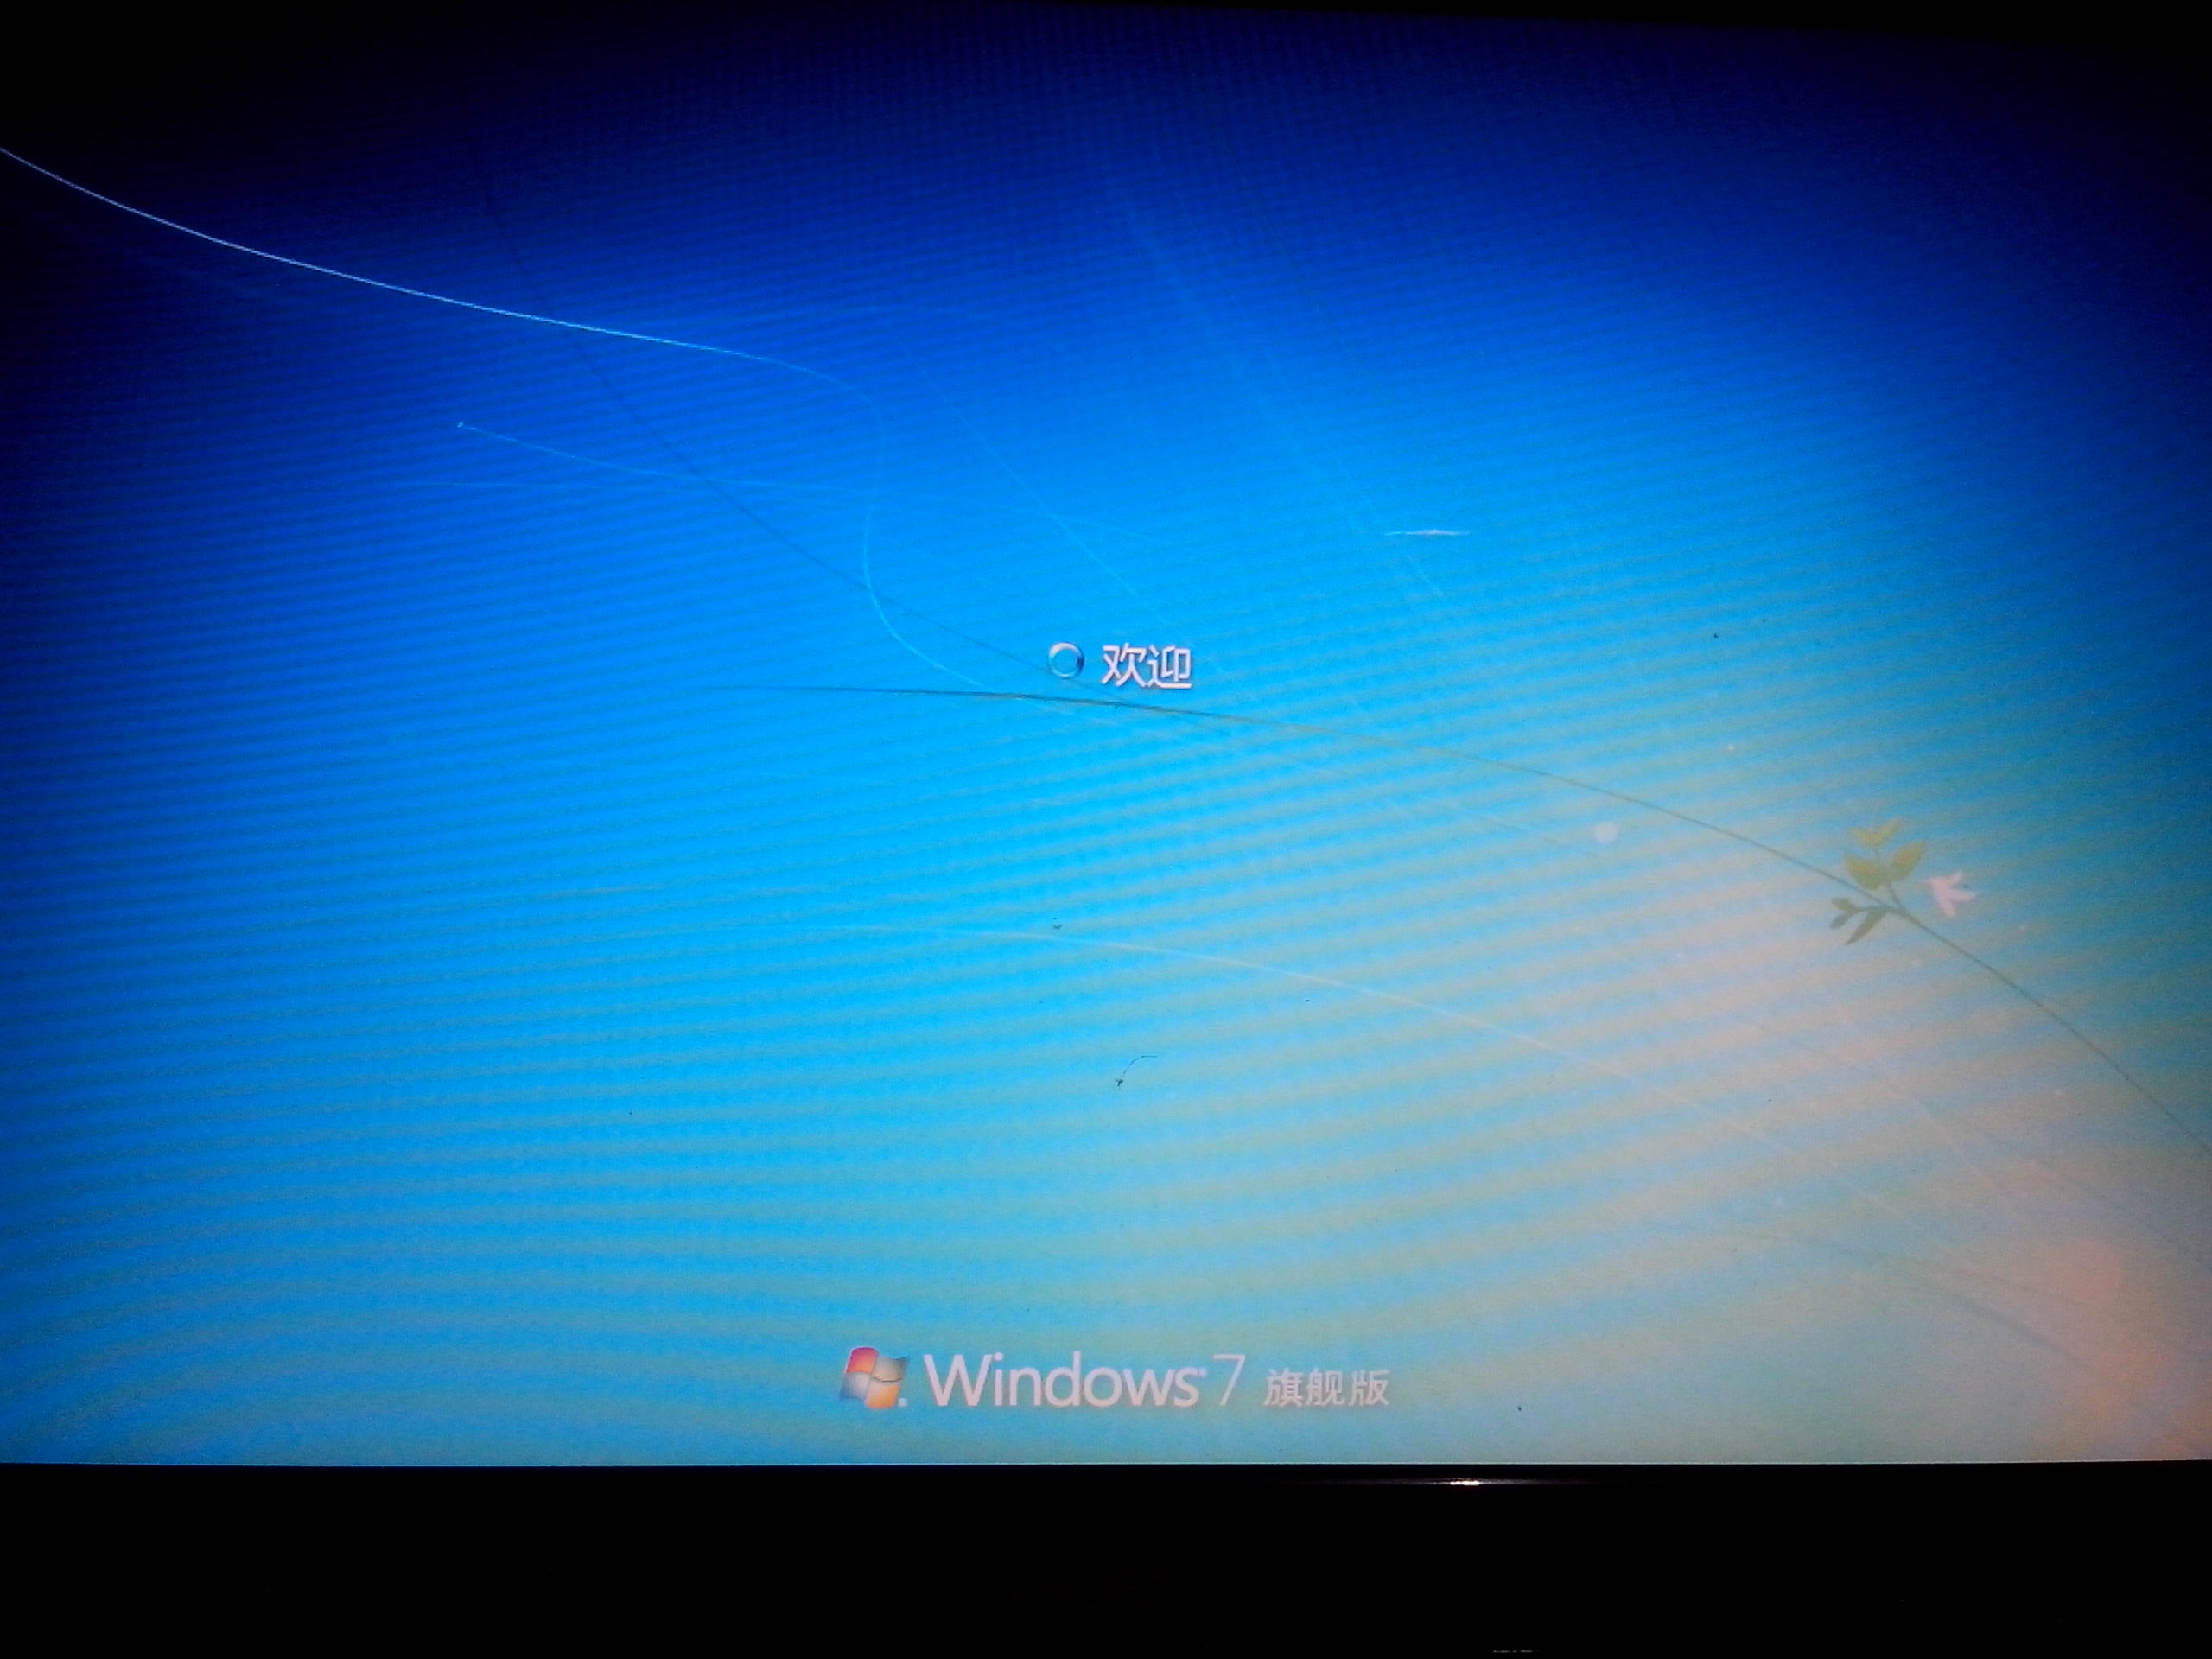 电脑开机欢迎界面之后就黑屏